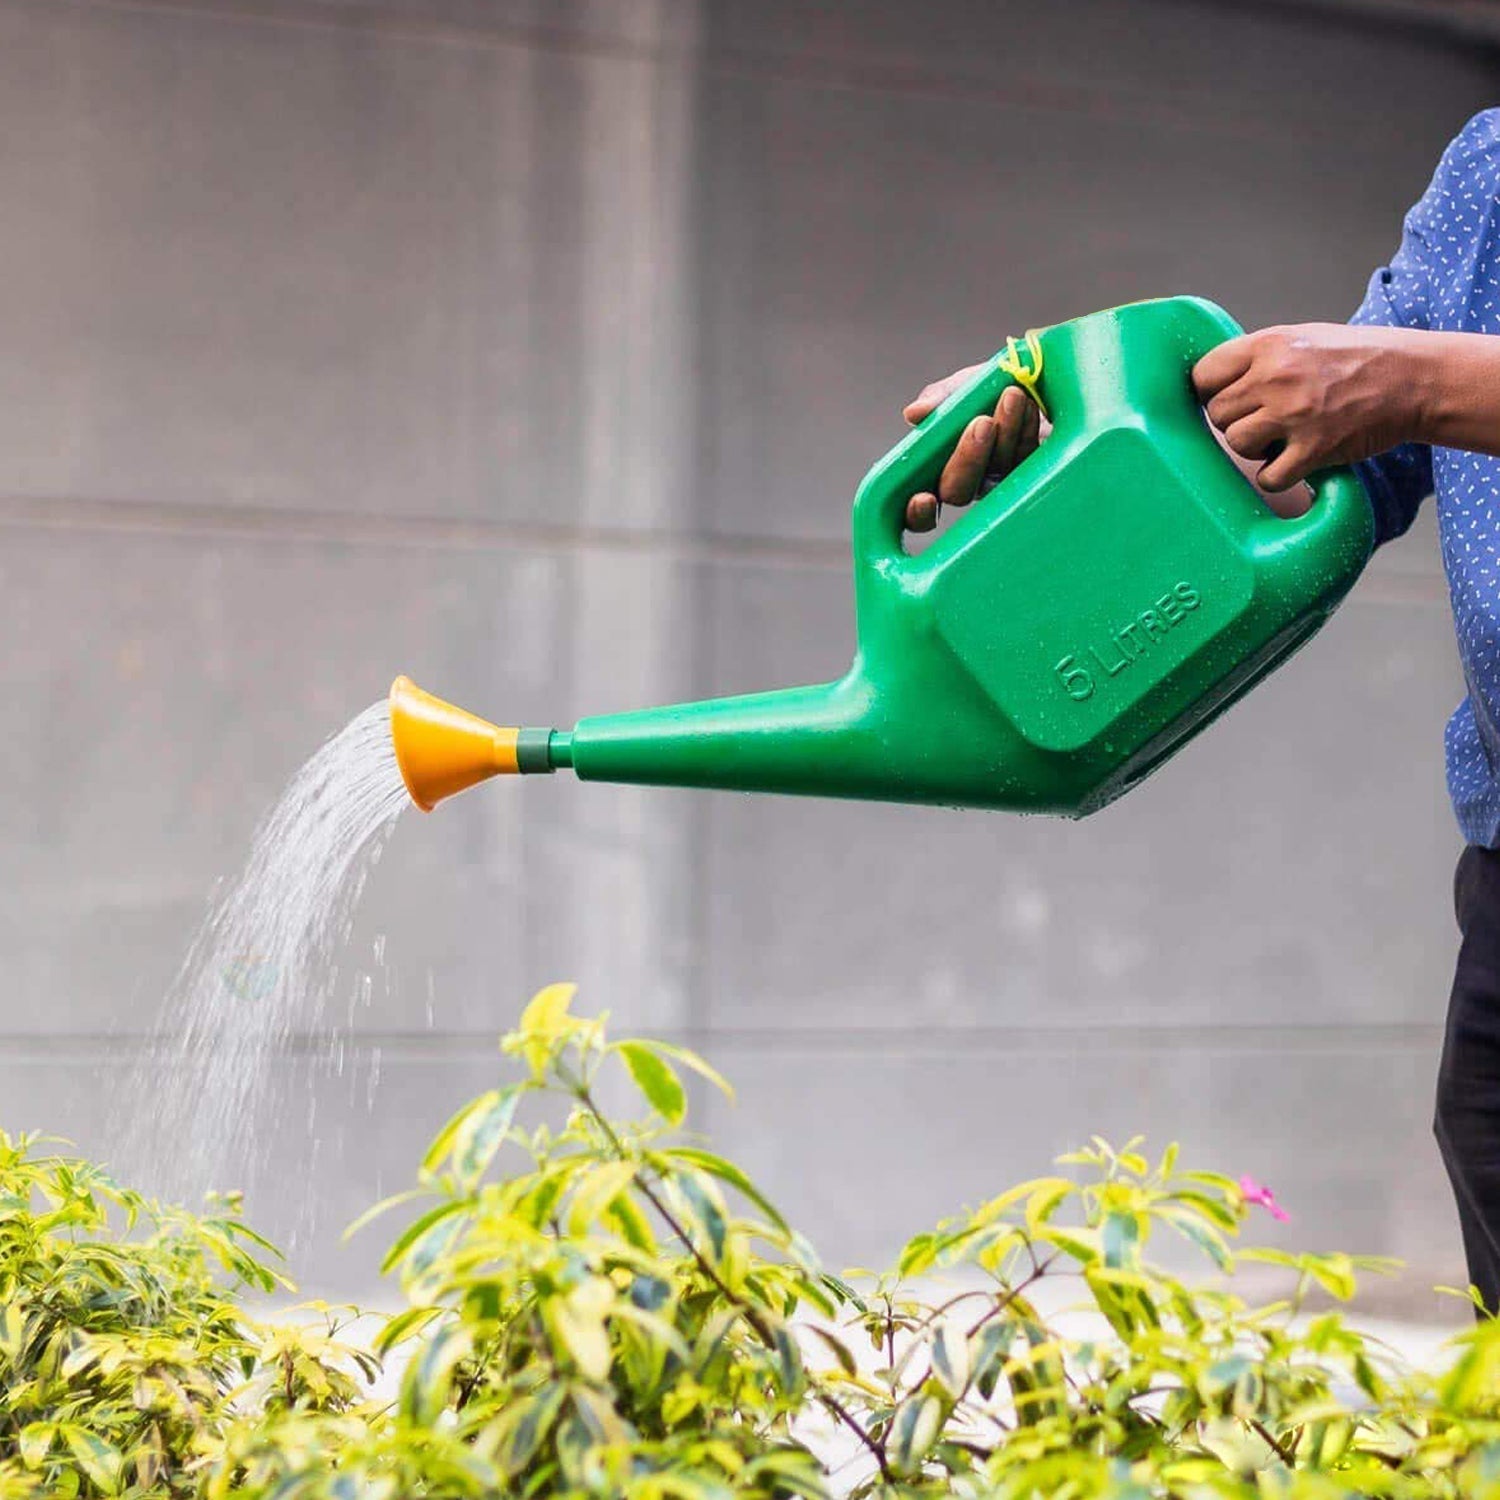 9021 Plastic Watering Can Water Sprayer Sprinkler for Plants Indoor Outdoor Gardening, 5 LTR DeoDap